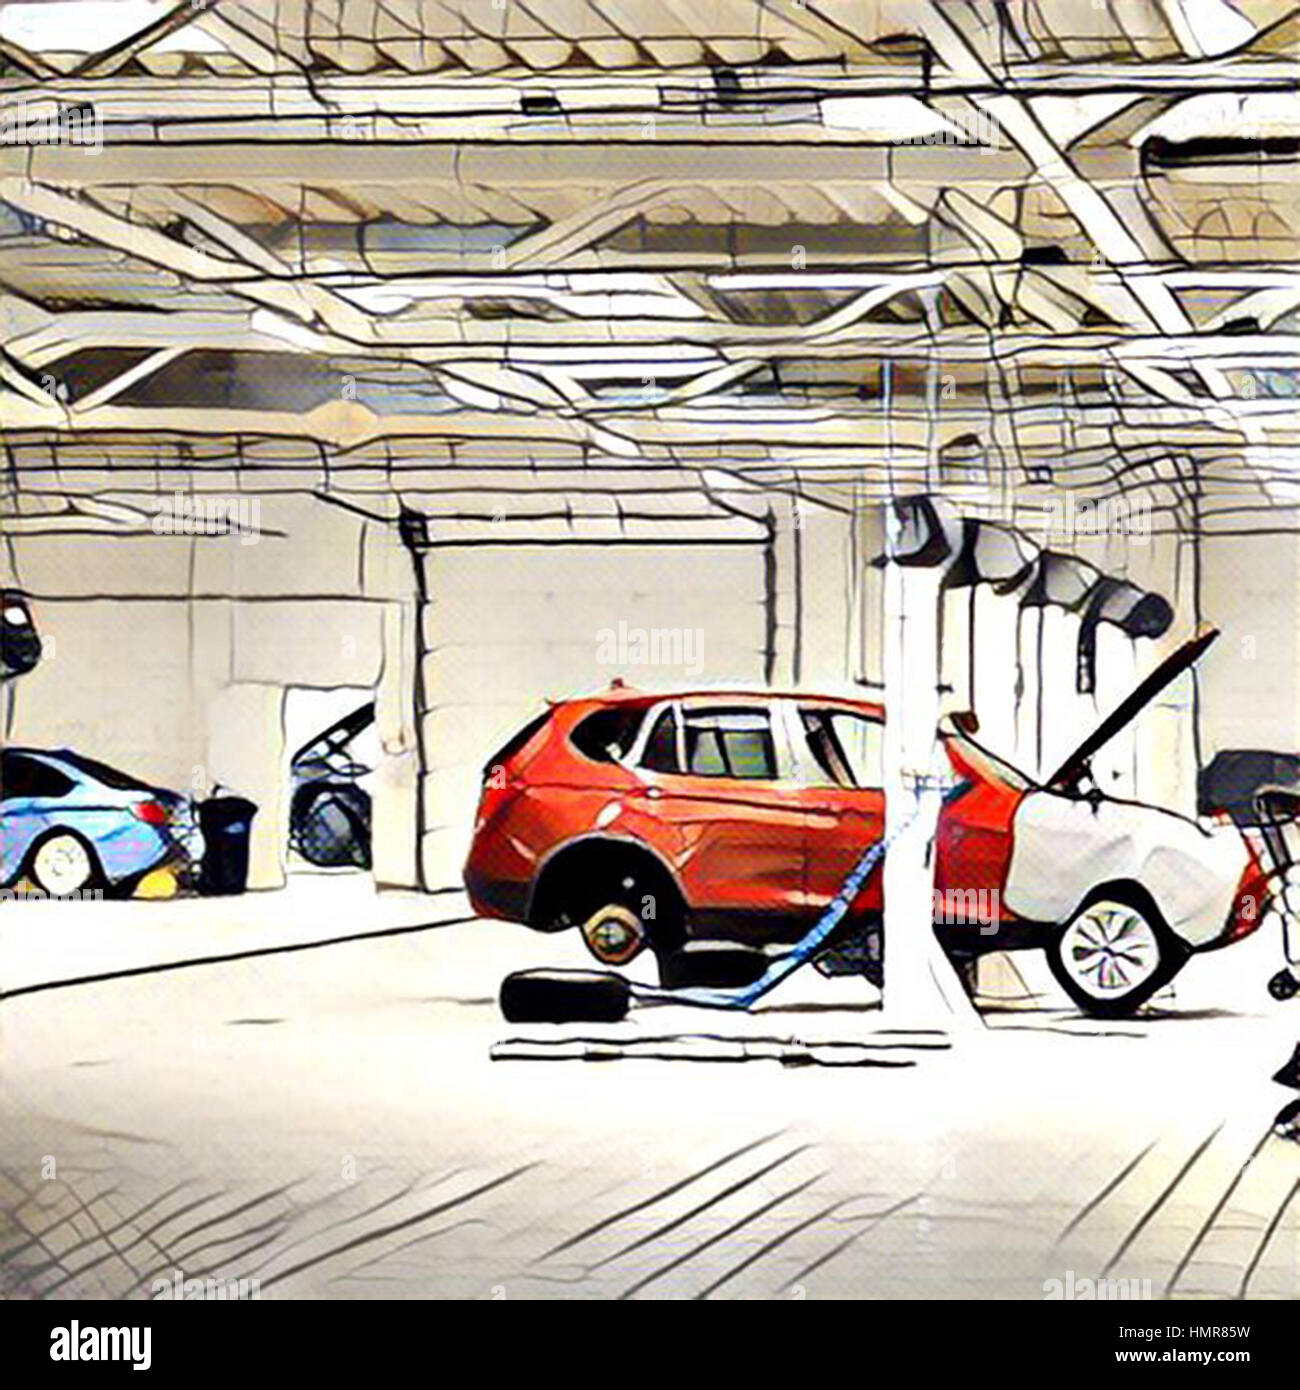 Auto Reparatur in großen und sauberen garage Stockfotografie - Alamy